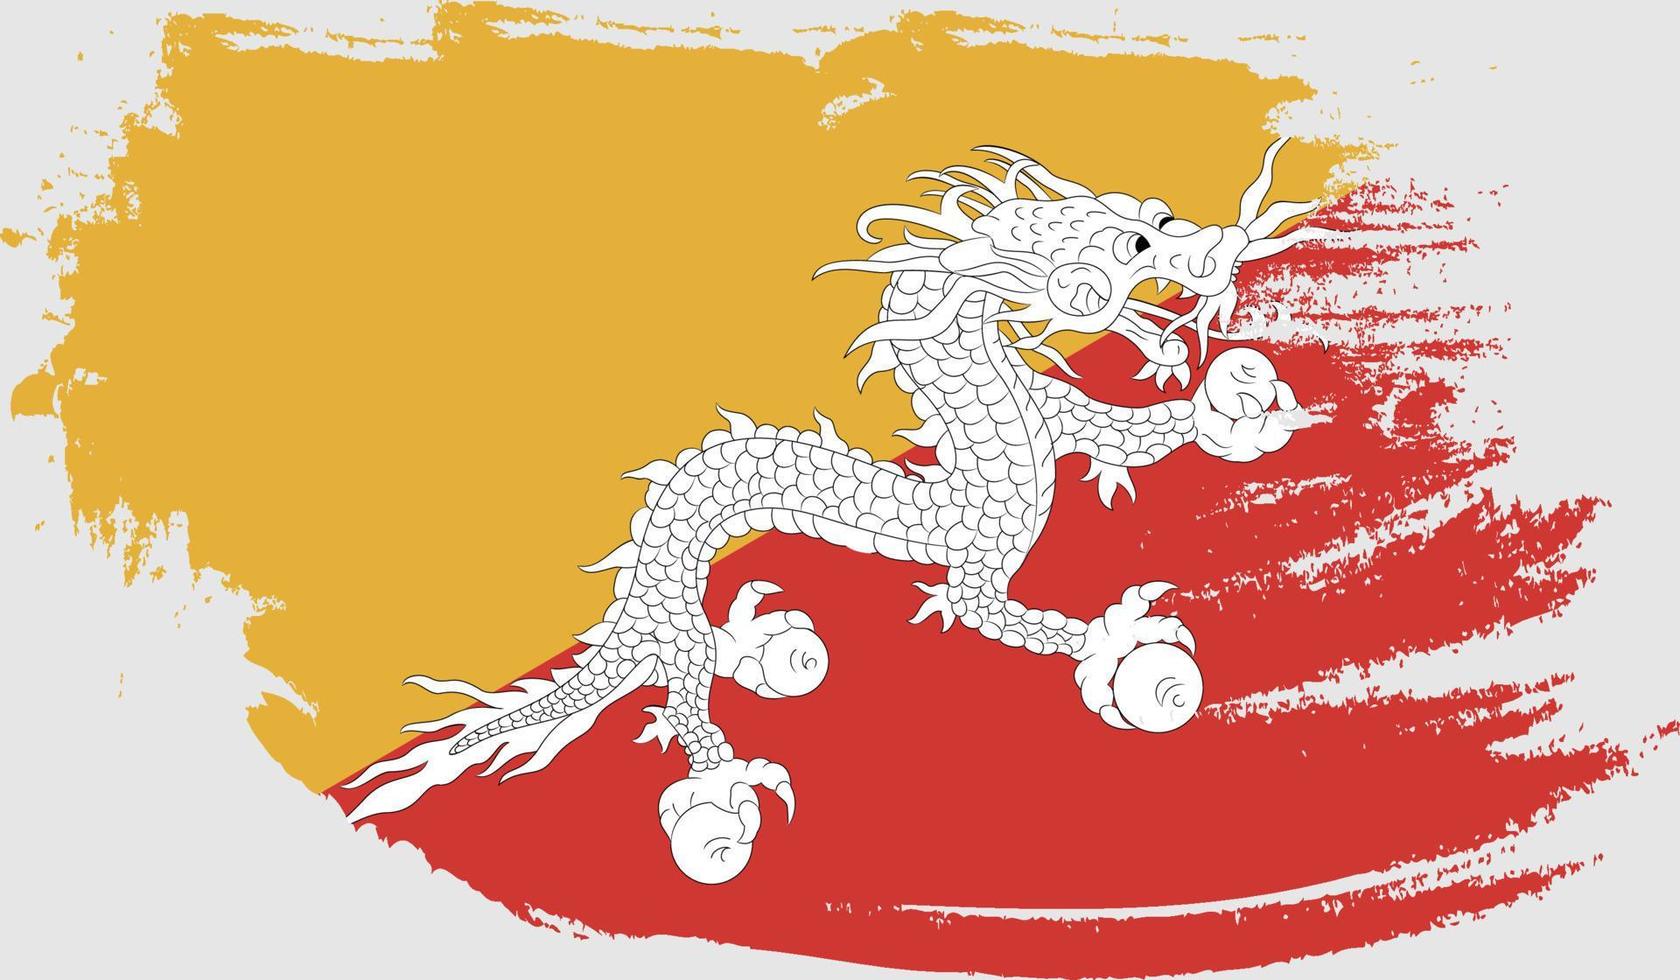 Bhutan flag with grunge texture vector